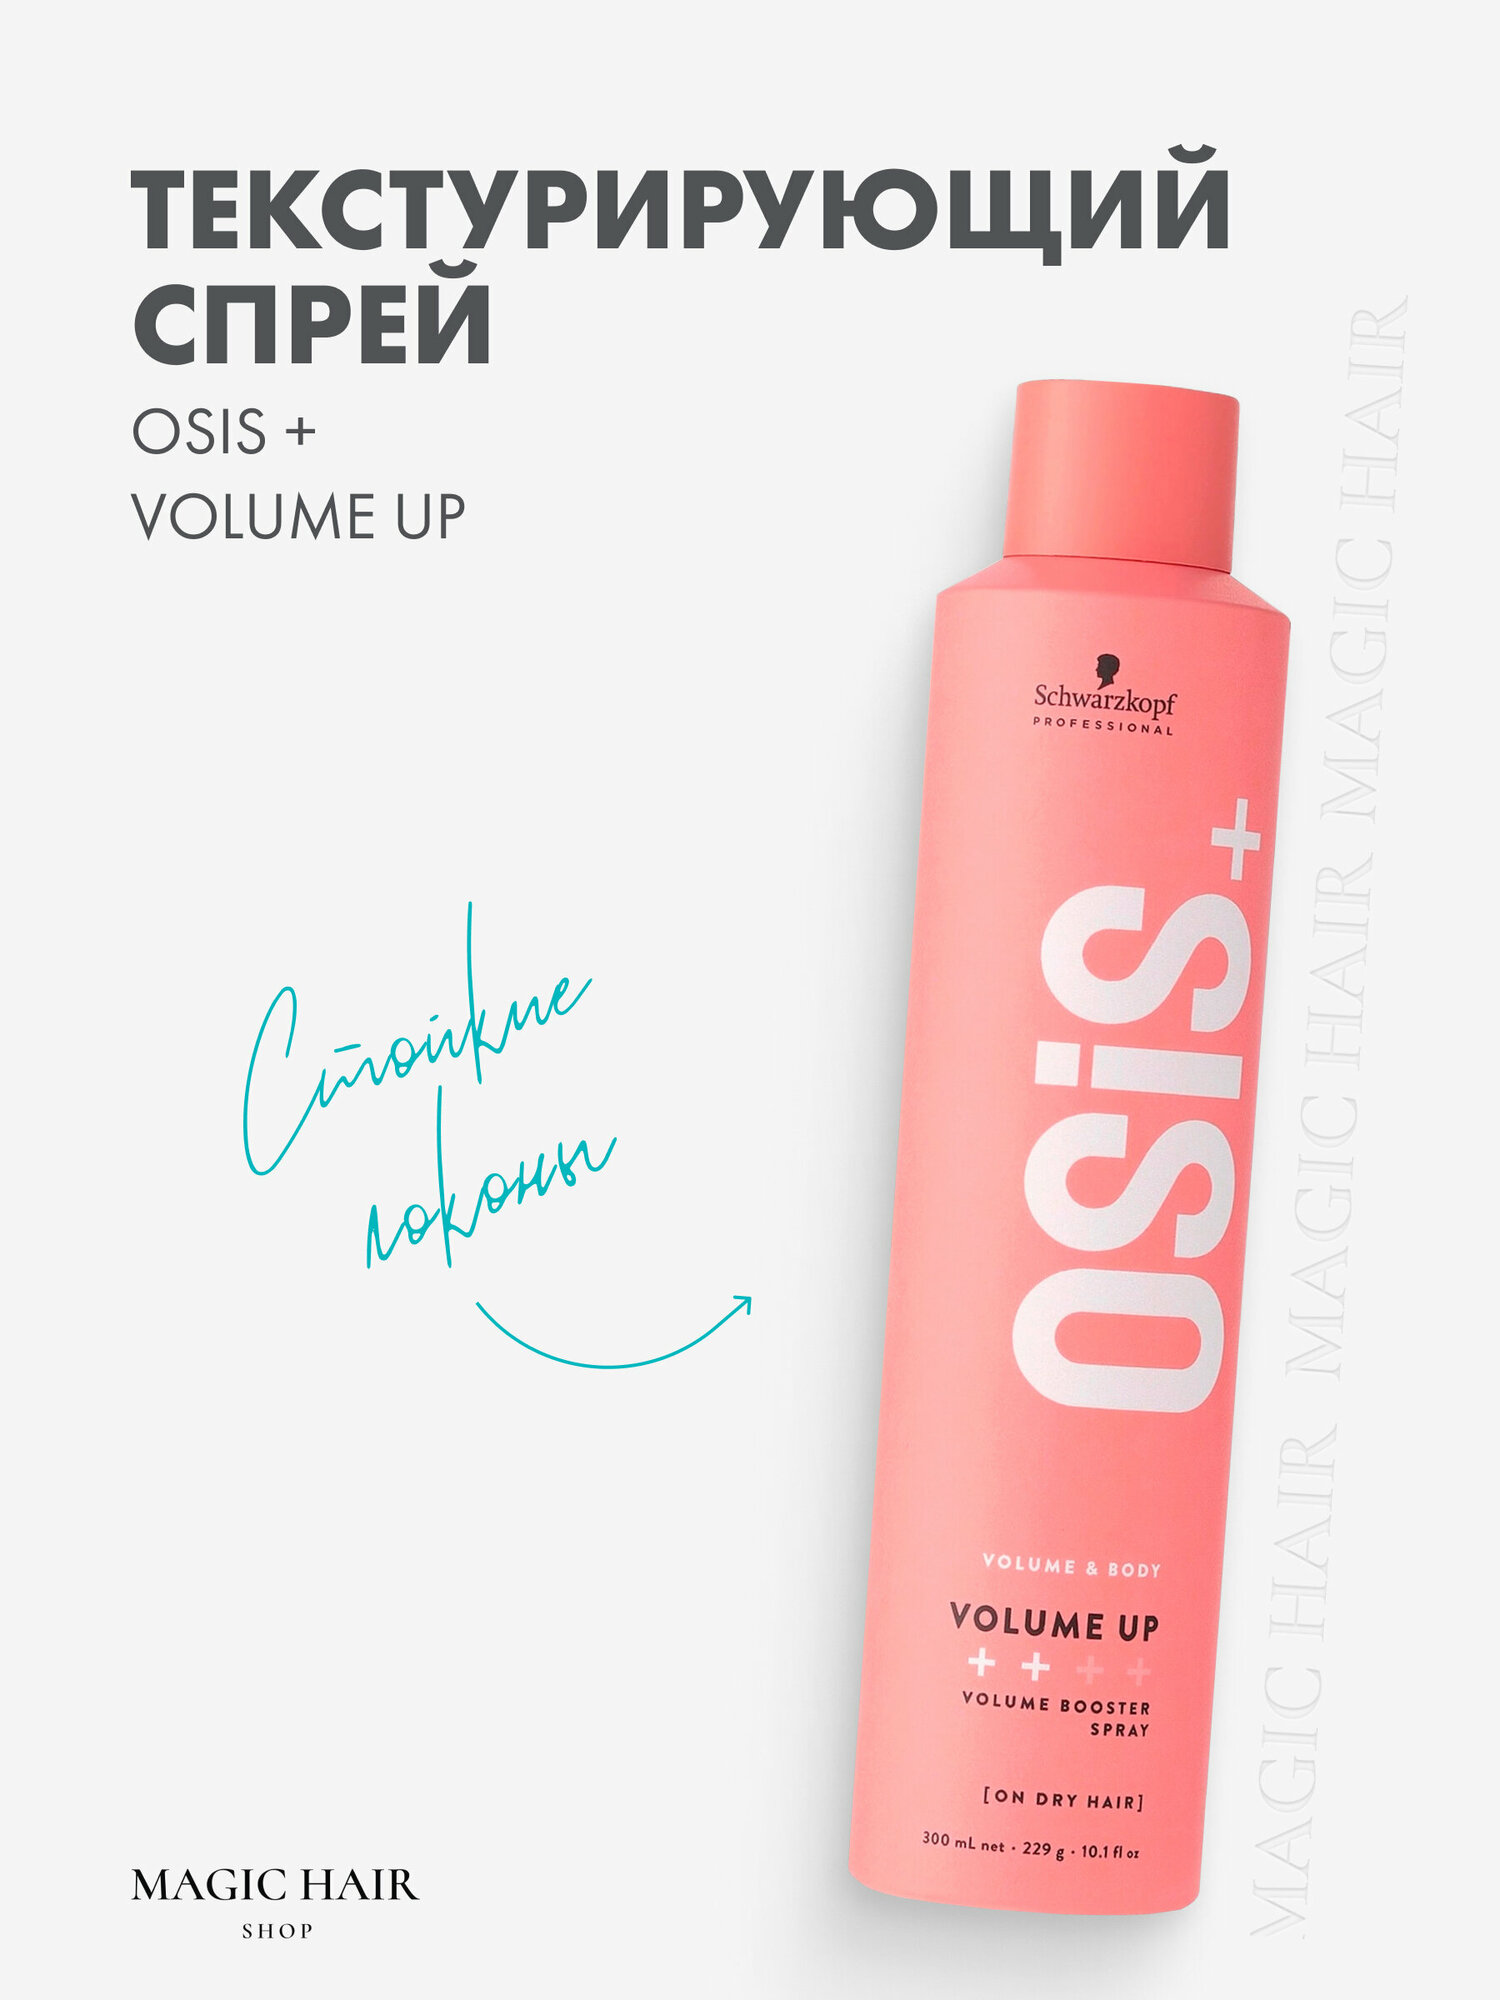 Текстурирующий спрей для укладки волос OSIS+ volume up